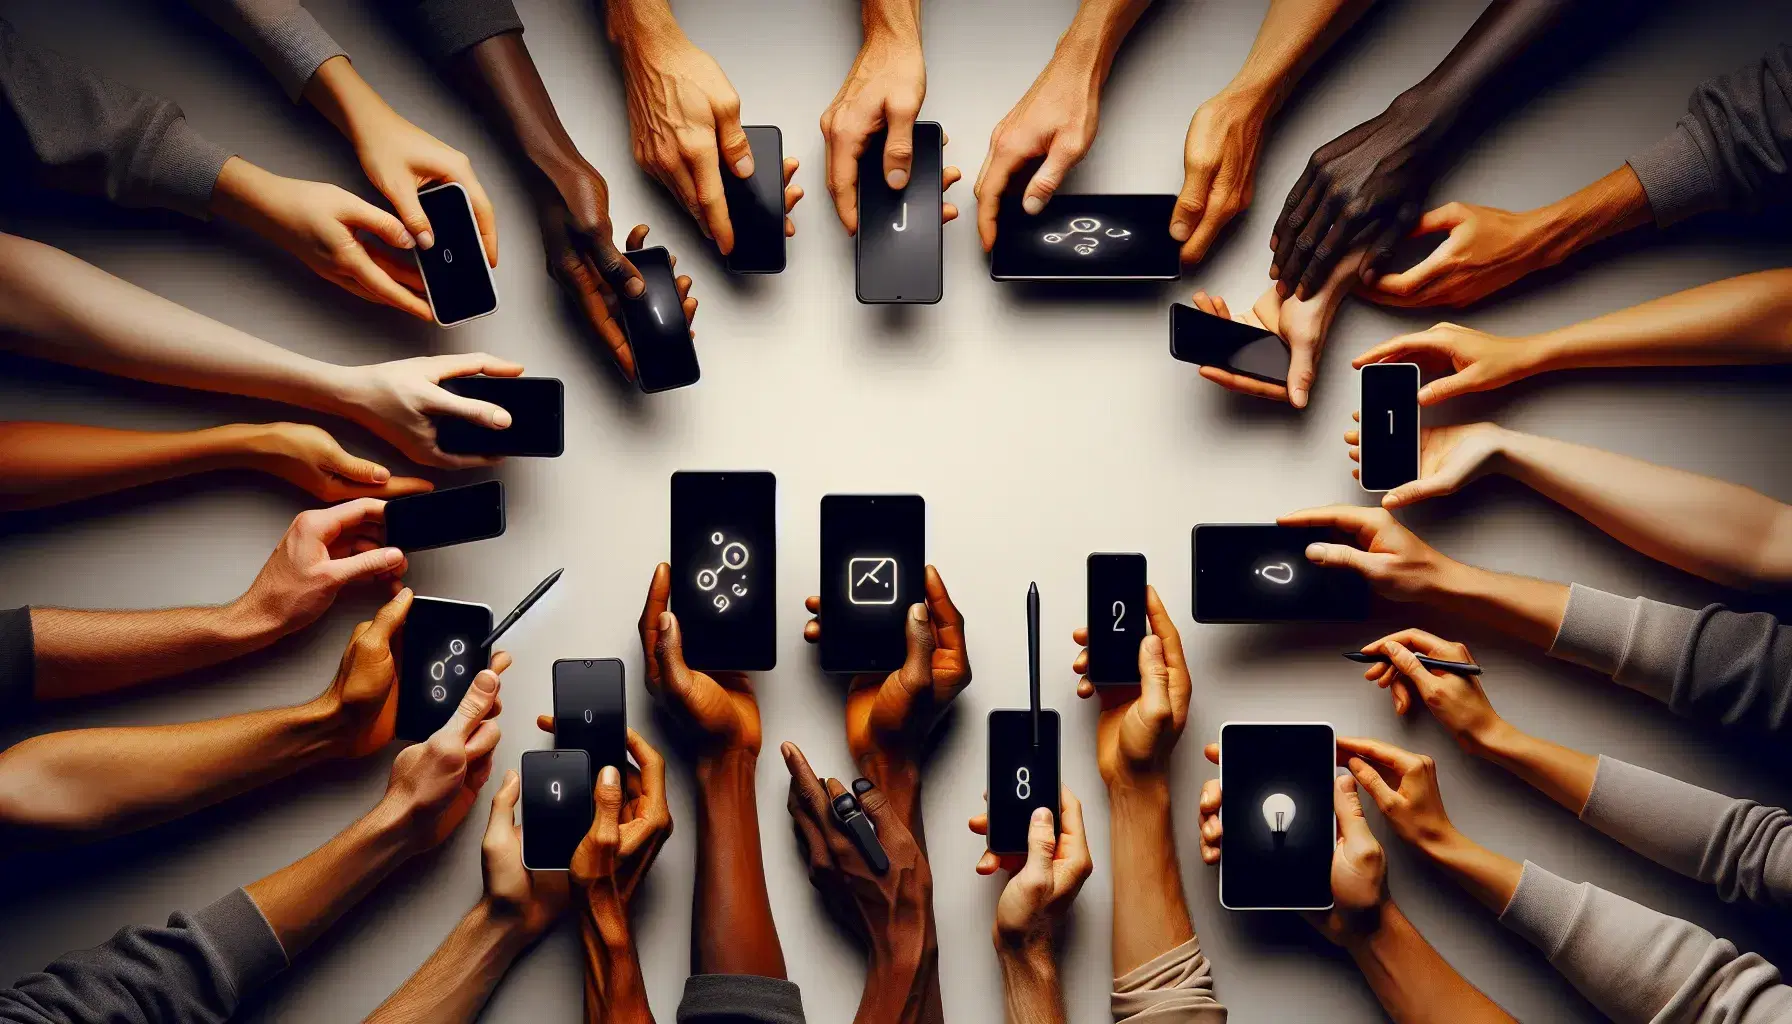 Manos de diversas tonalidades sujetando dispositivos electrónicos modernos como tabletas y smartphones, convergiendo en un punto central sin texto ni símbolos visibles.